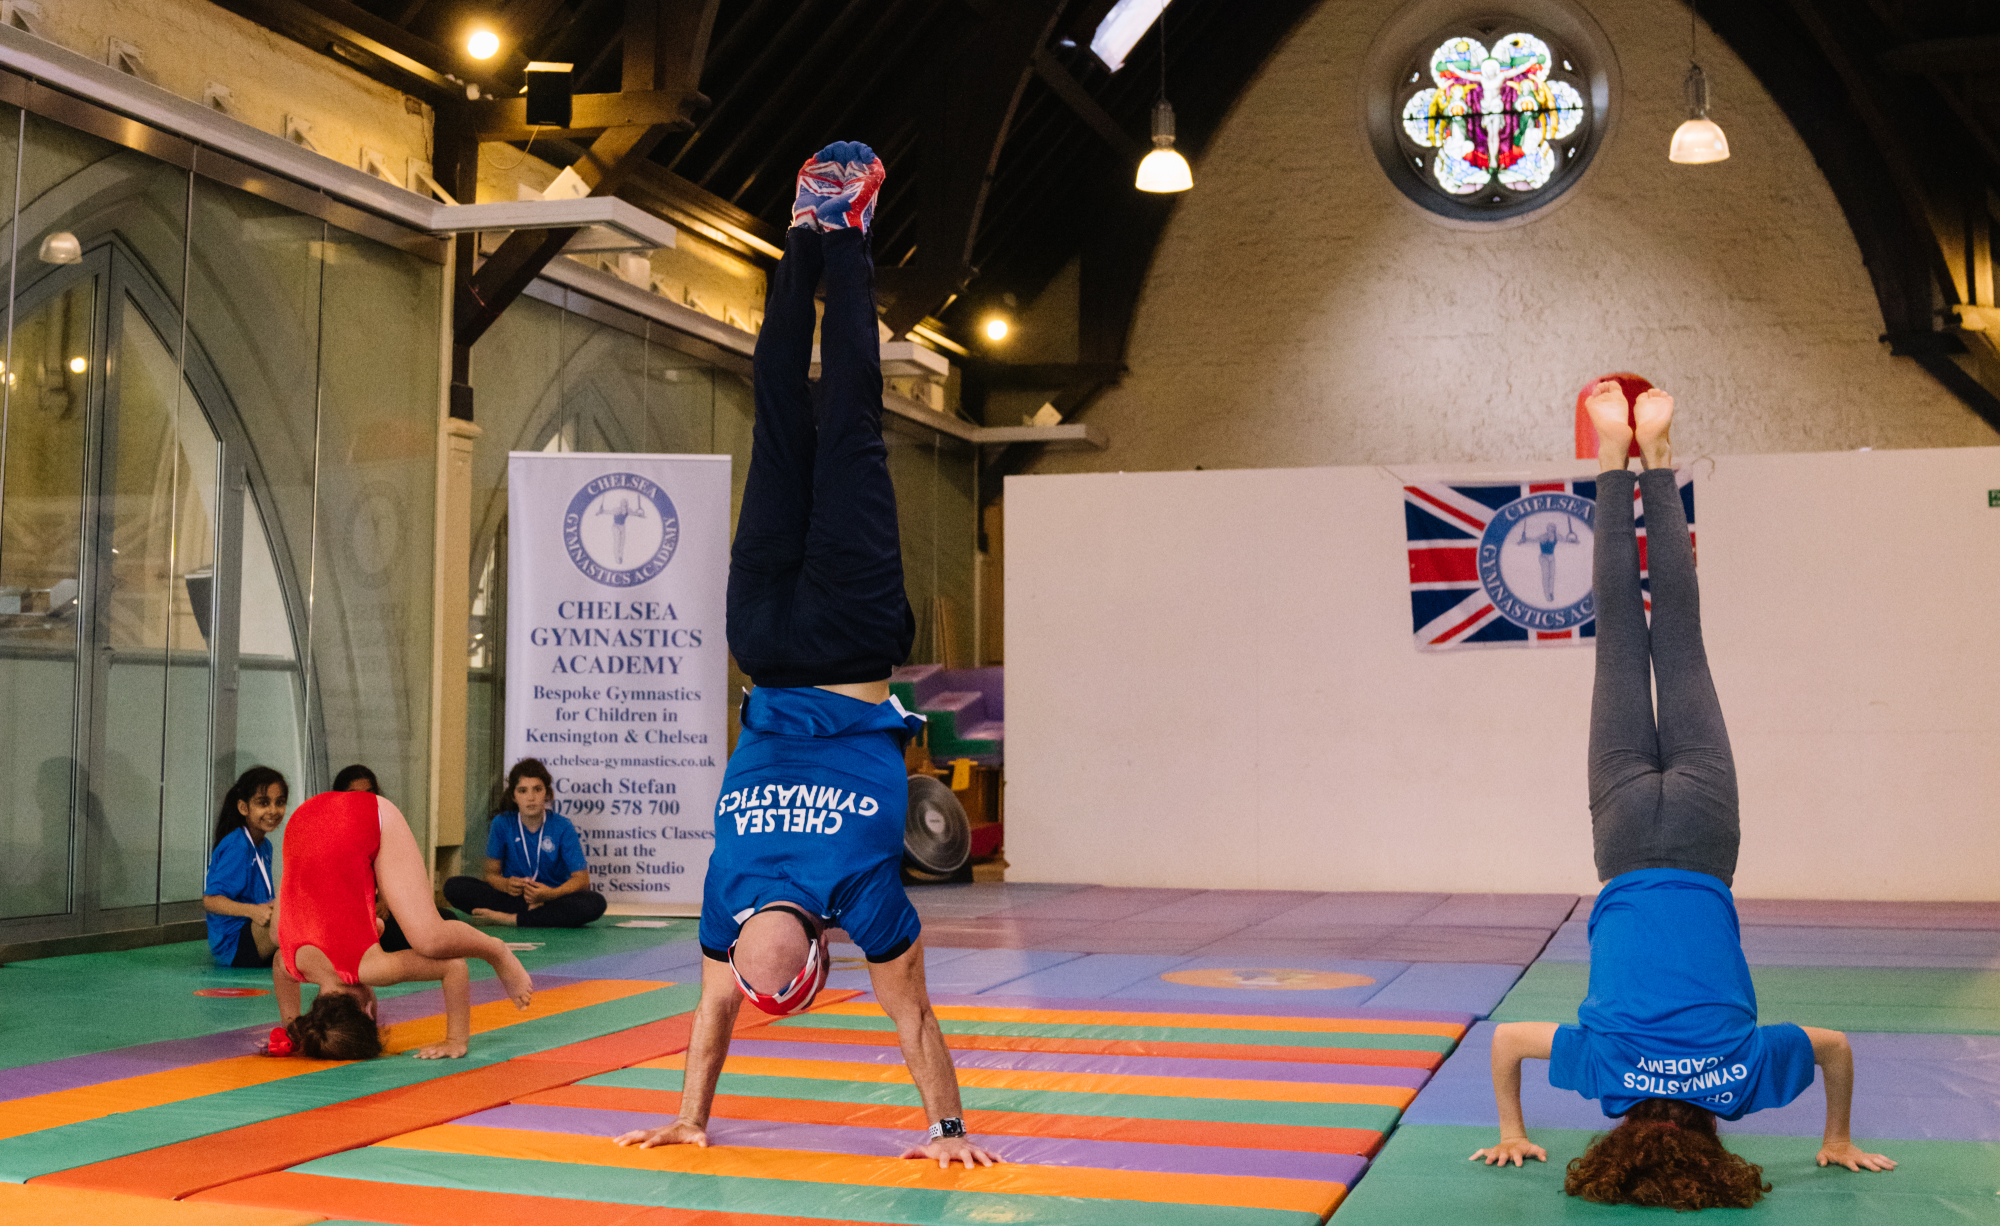 Handstands at Chelsea Gymnastics Academy in Kensington